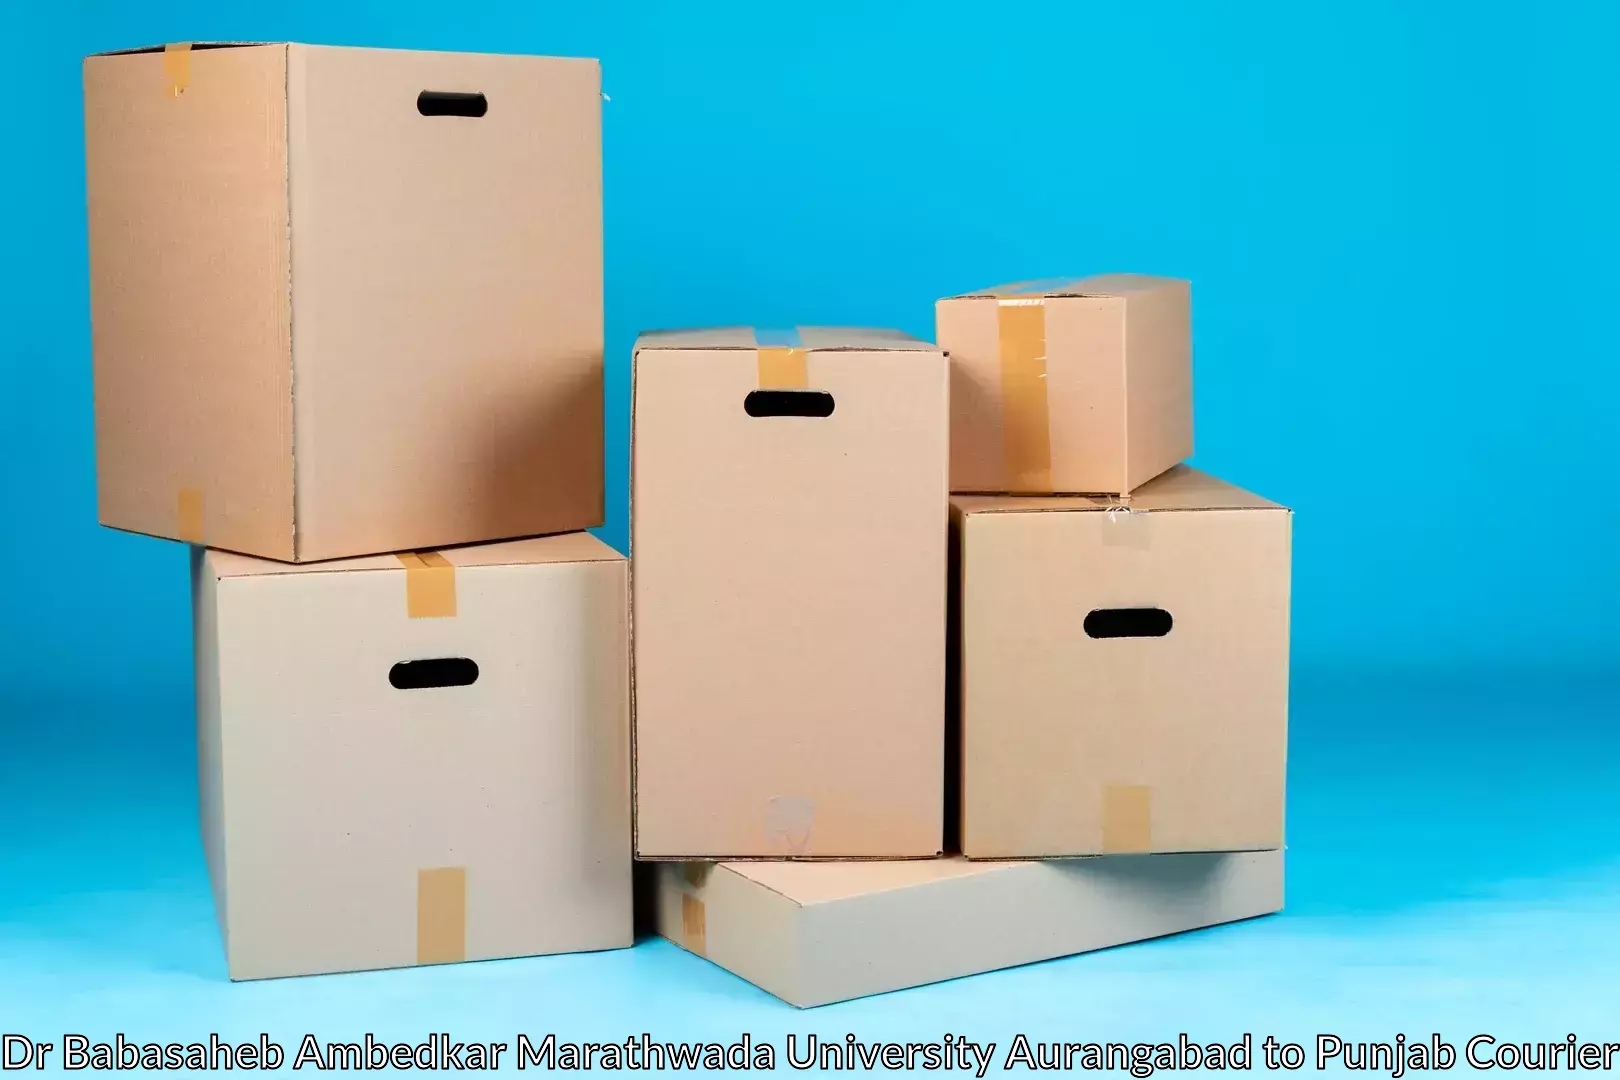 Seamless moving process Dr Babasaheb Ambedkar Marathwada University Aurangabad to Malout